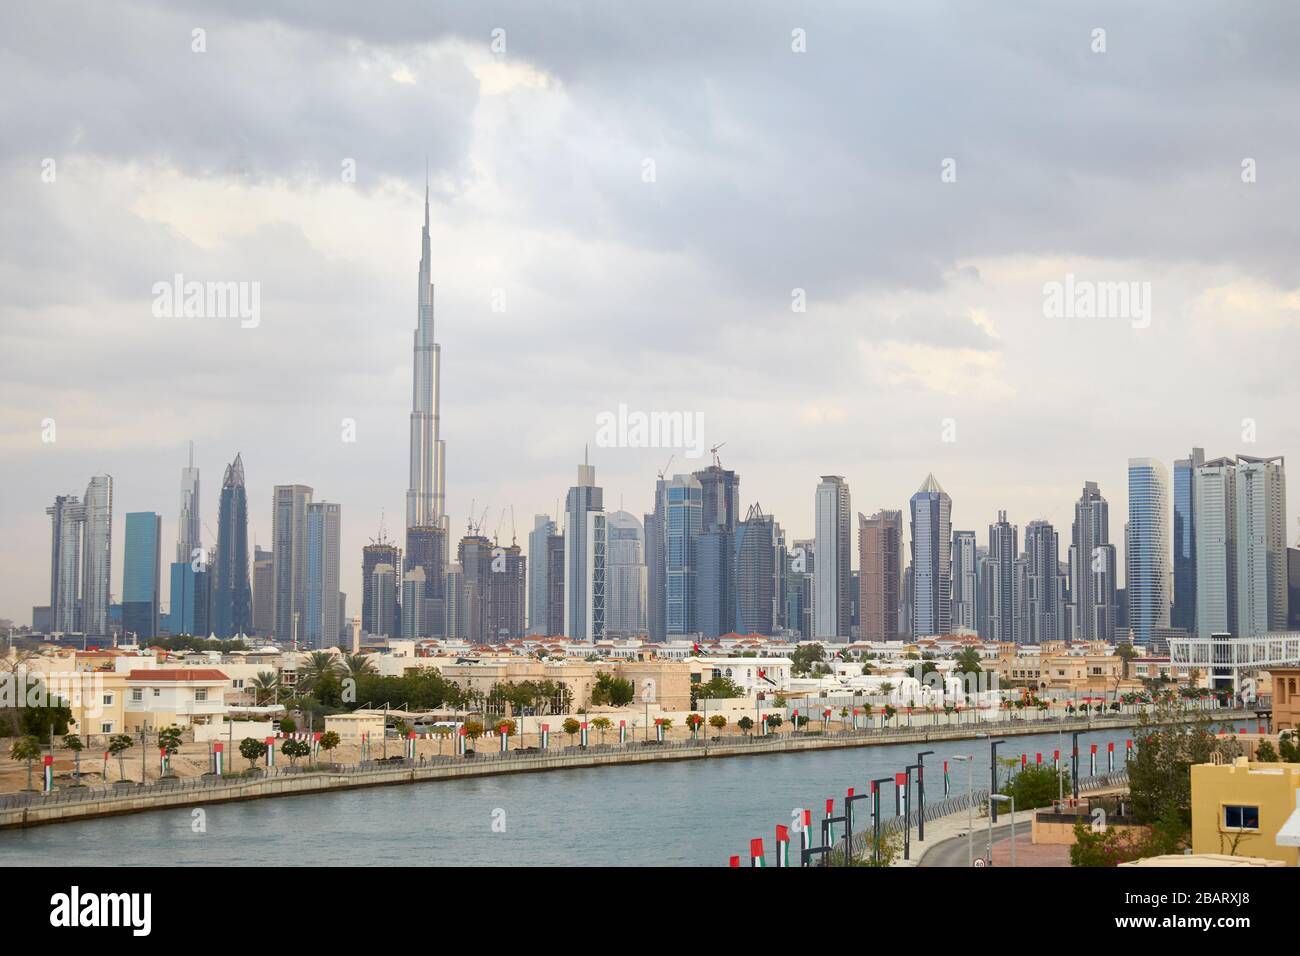 Dubai-Stadt, Burj Khalifa Wolkenkratzer und Wohngebiet mit Kanal in einem bewölkten Tag Stockfoto